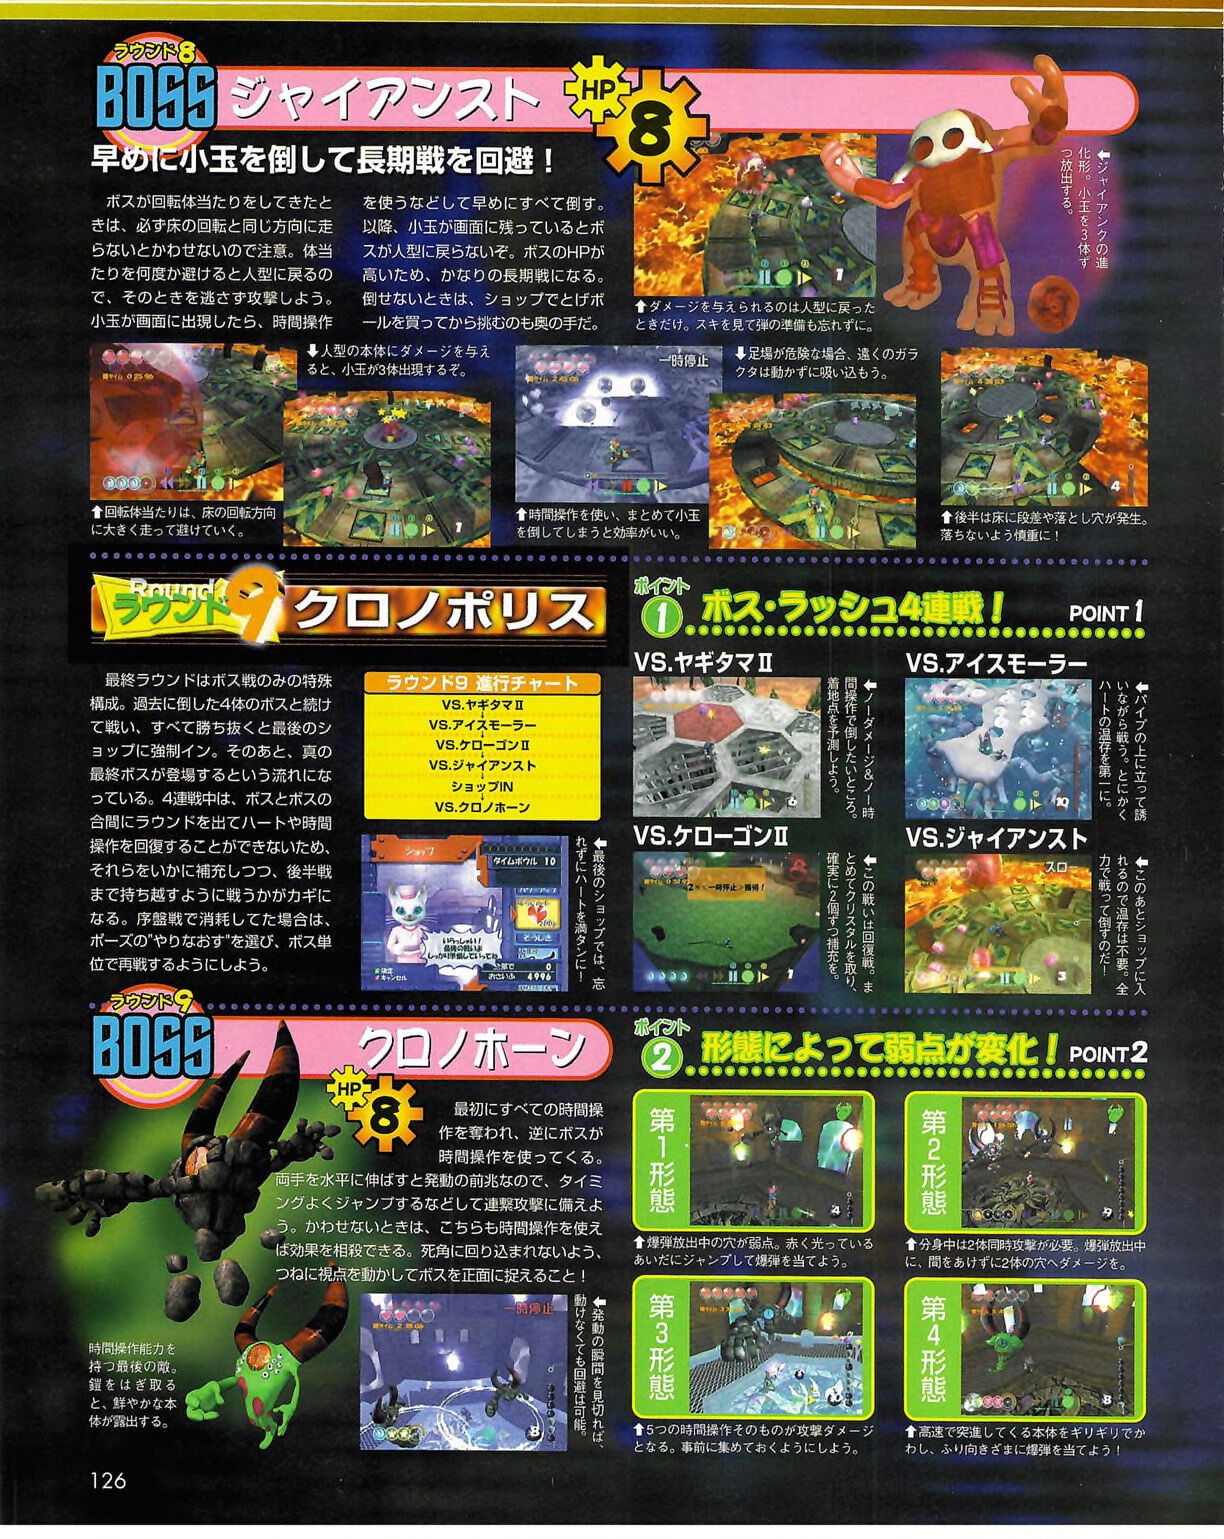 Famitsu_Xbox_2003-04_jp2 125